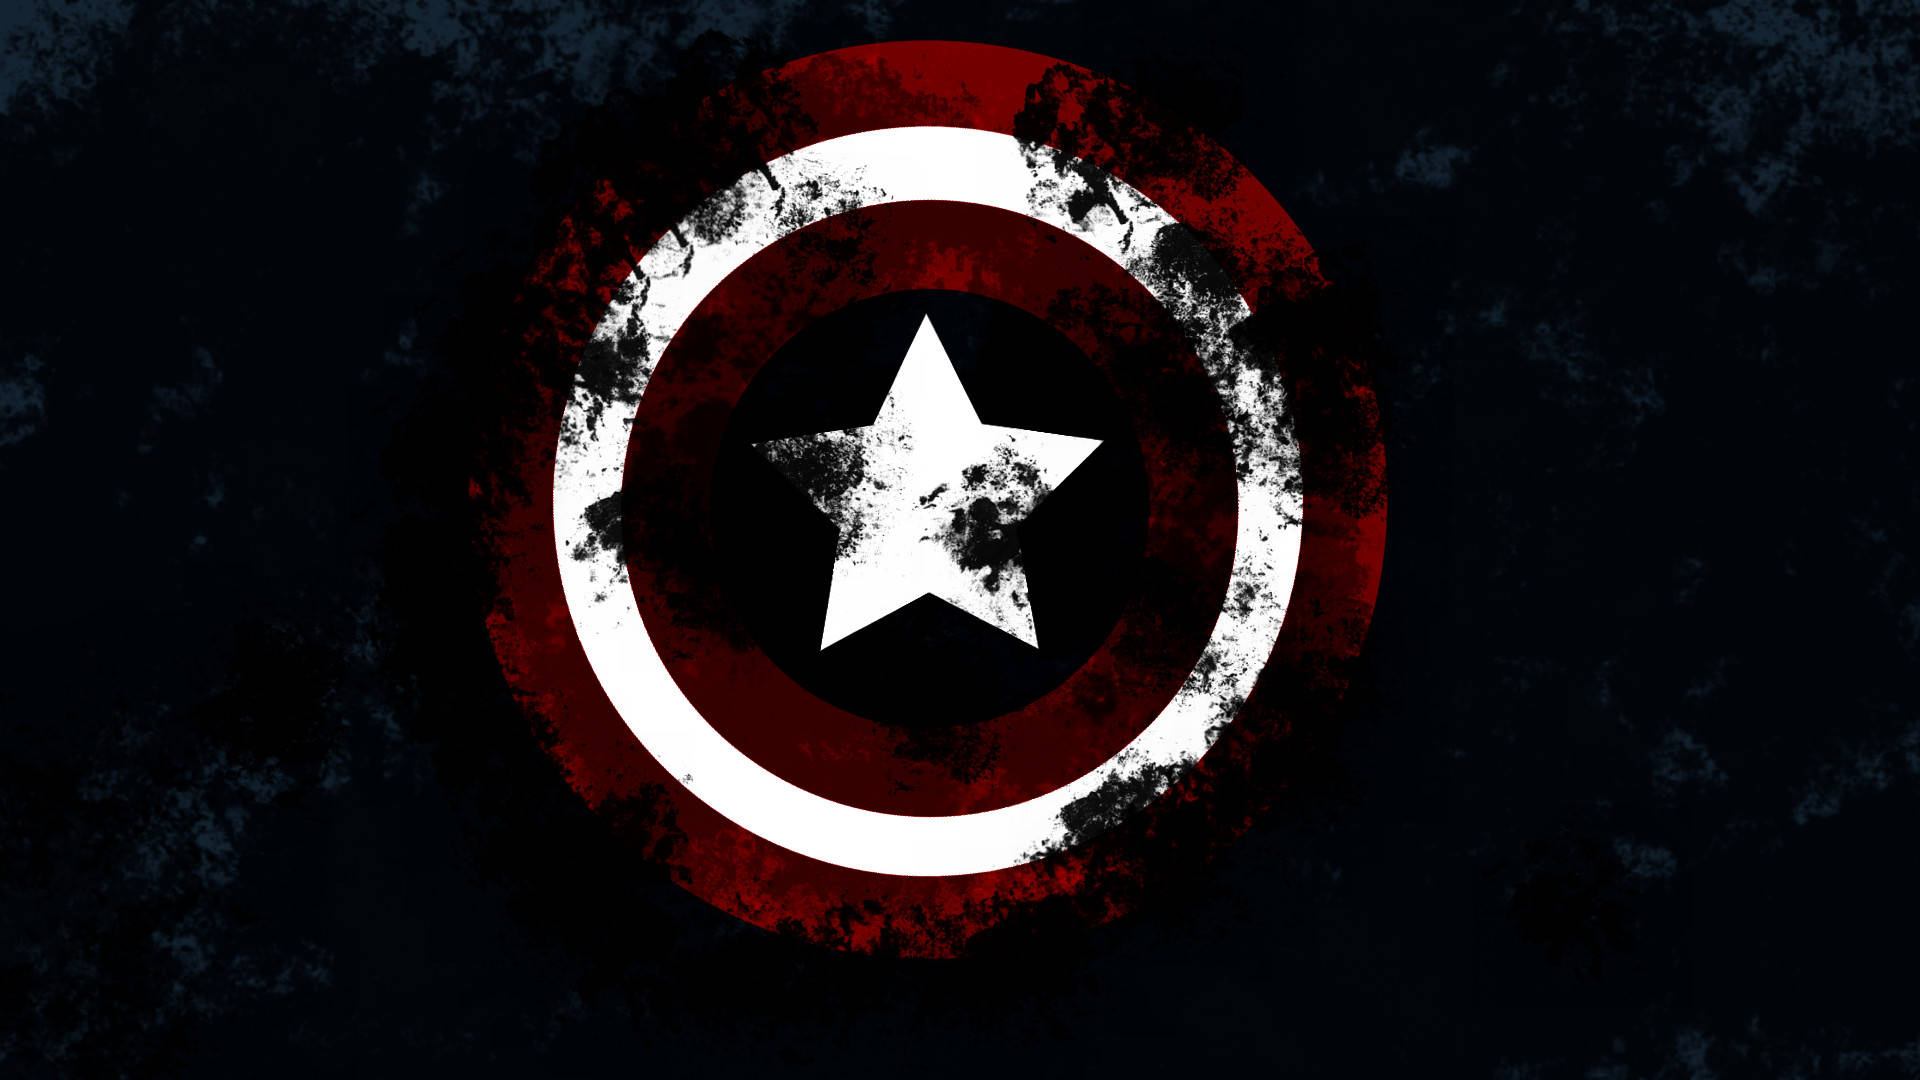 Beskidt Captain America skjold tapet Wallpaper